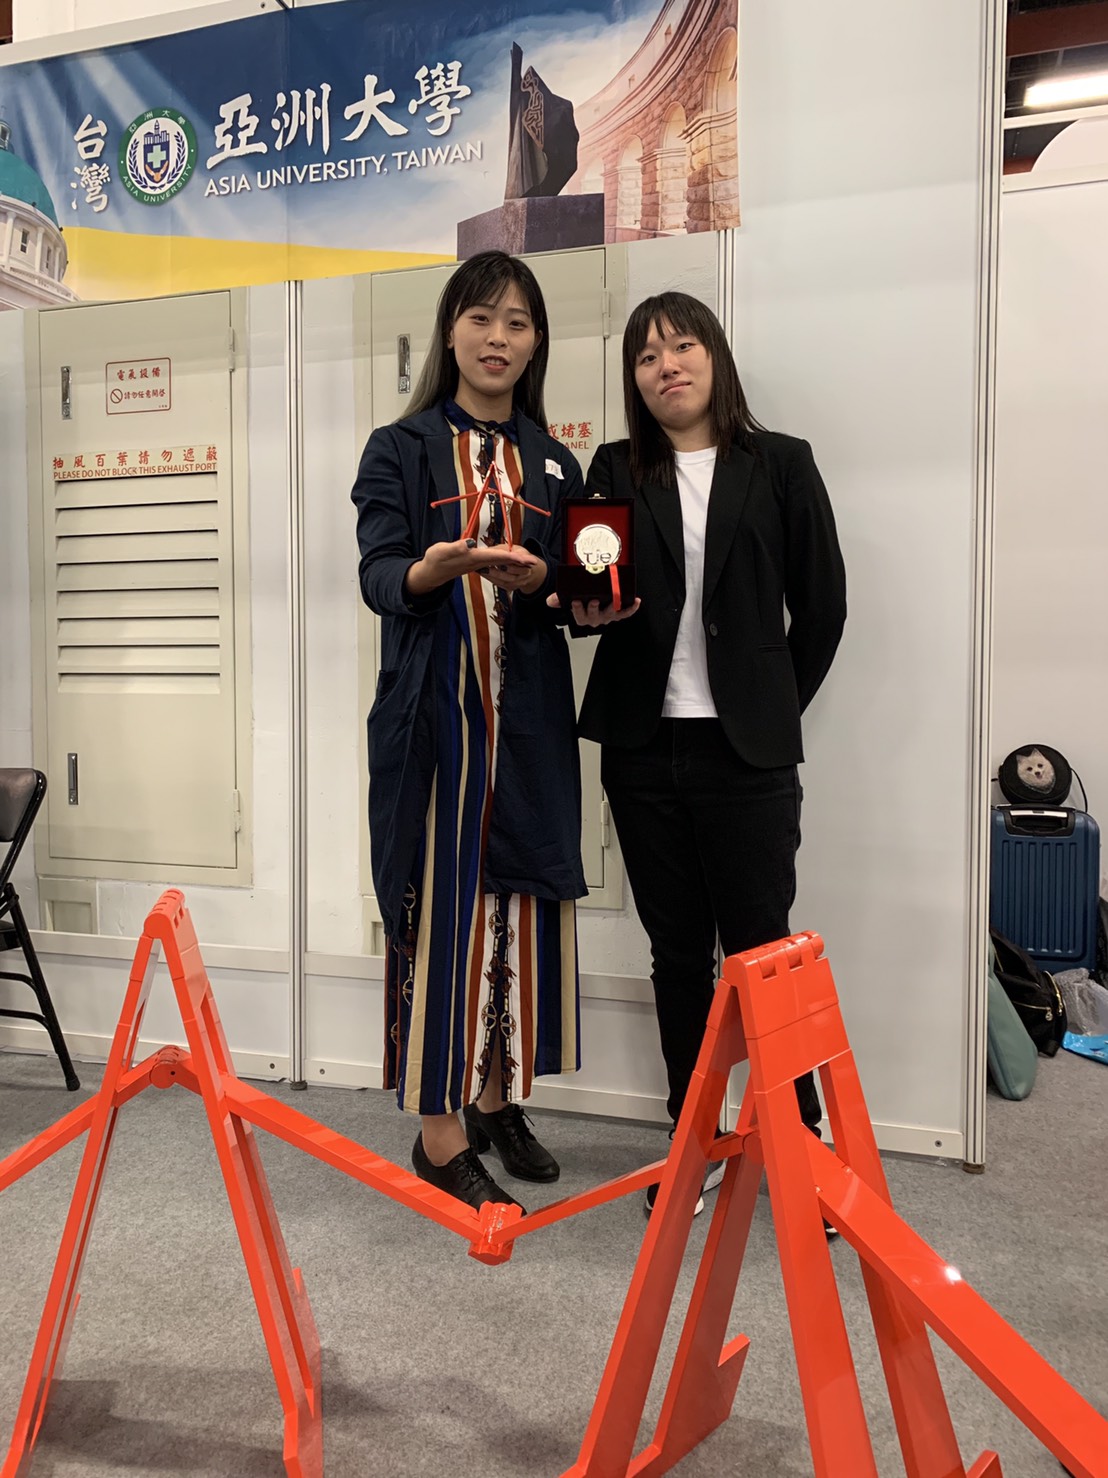 2019台湾创新技术博览会(原台北发明展)(1金、2银、1铜、1俄罗斯特别奖) 合照